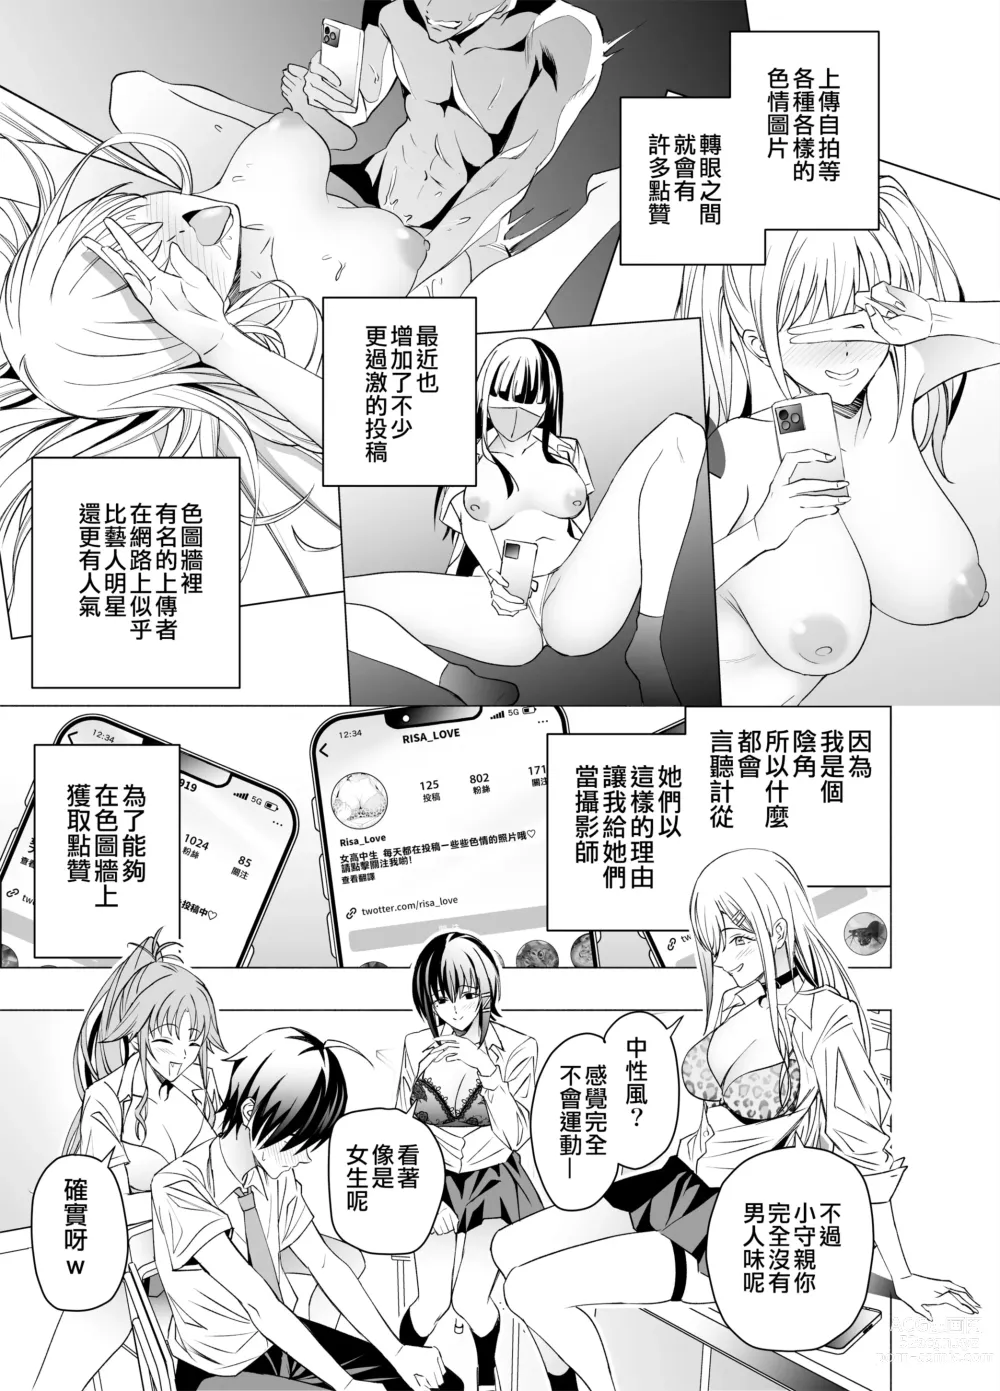 Page 7 of doujinshi 色情SNS的點贊量為目的而向你靠過來的辣妹的故事